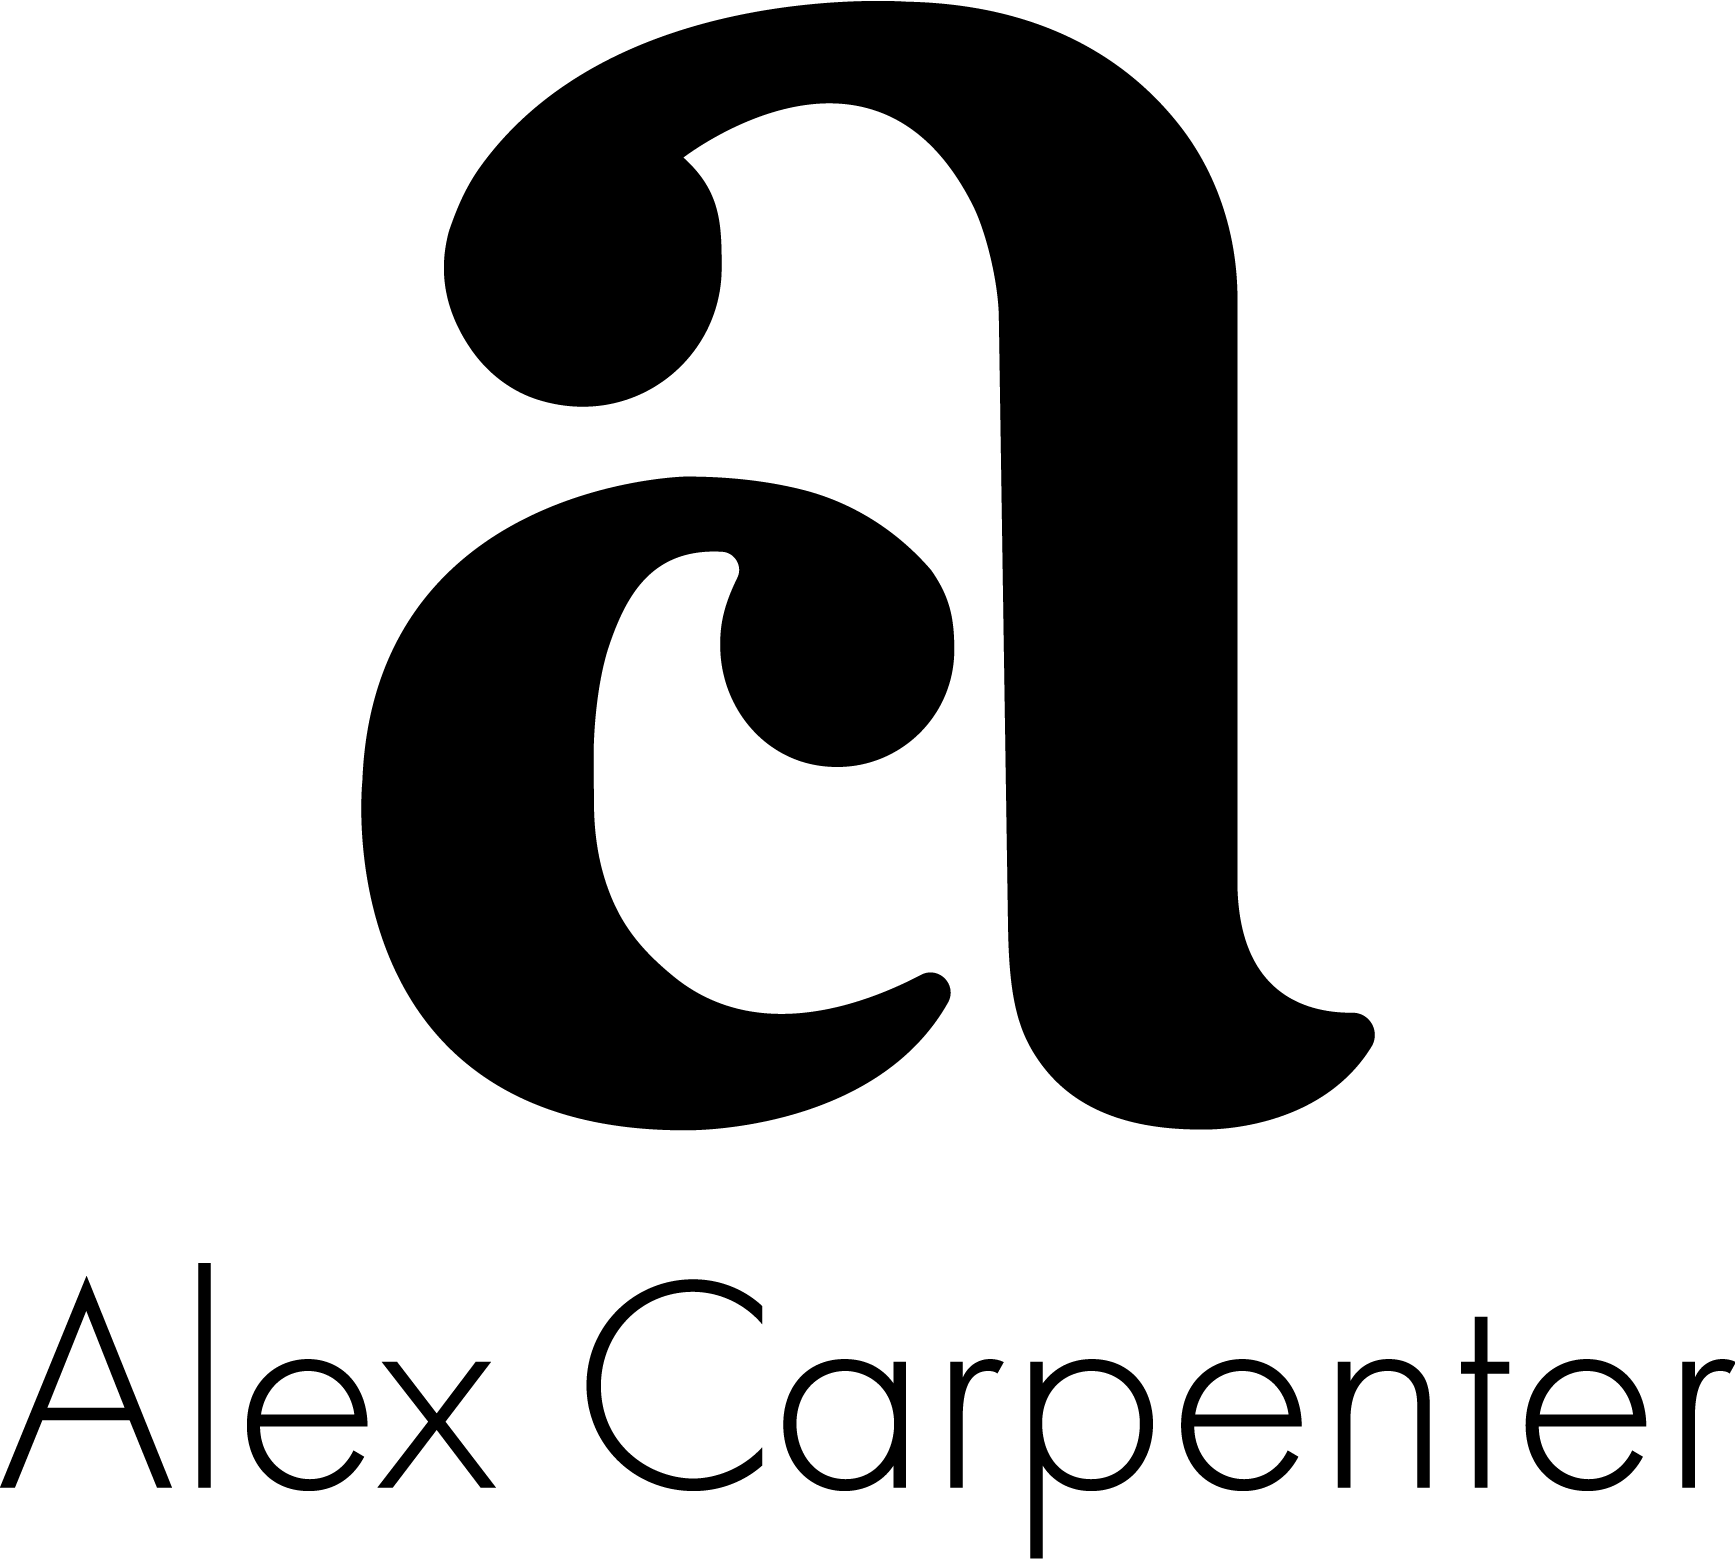 Alex Carpenter